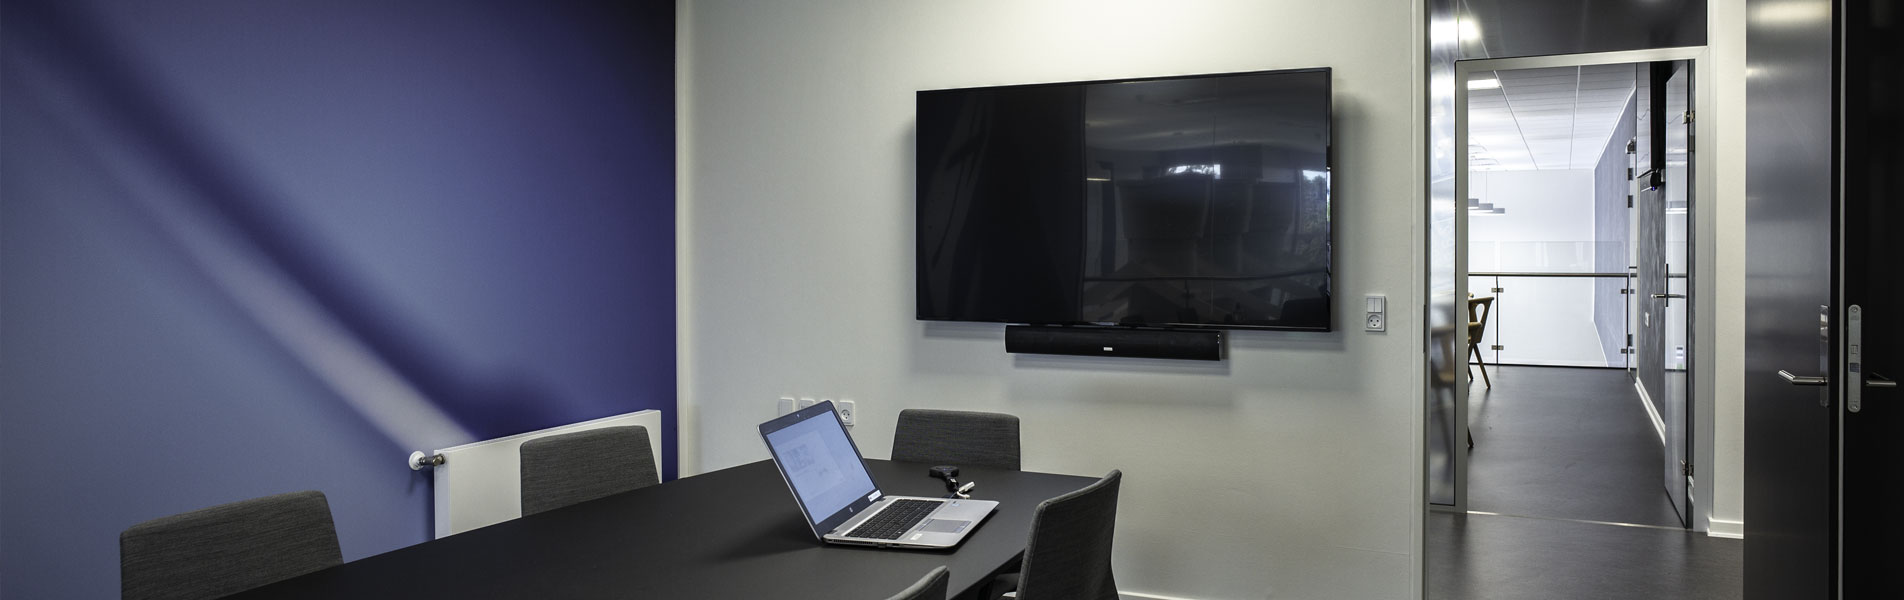 Mødelokaler med elegante skærmløsninger